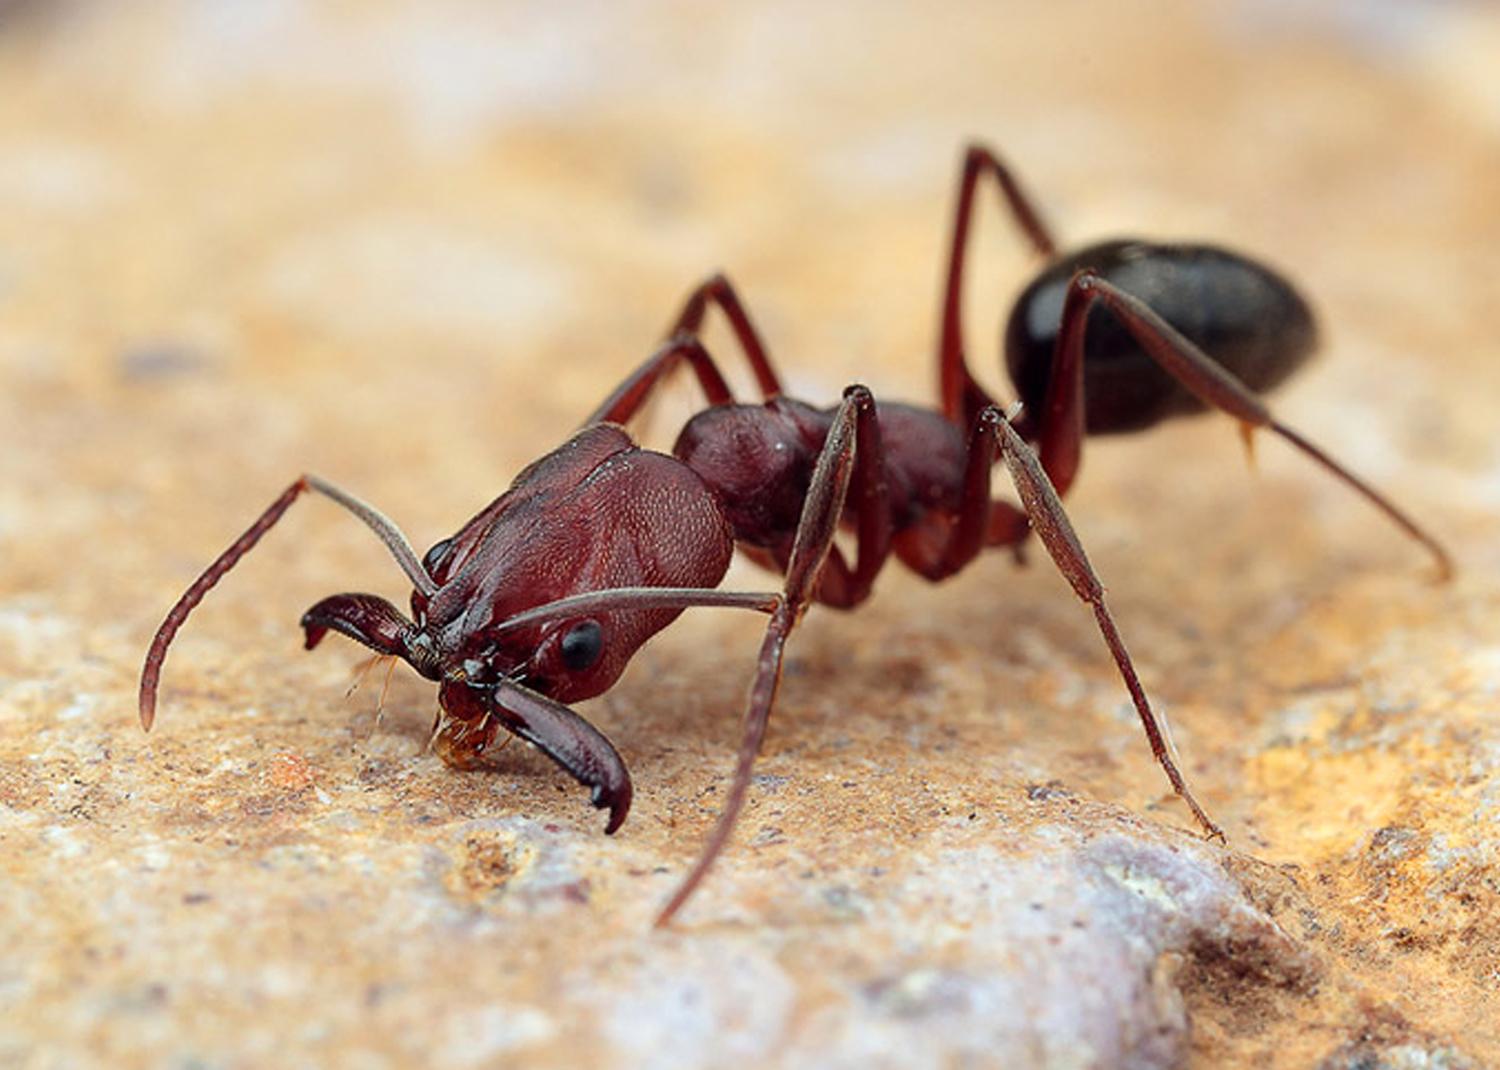 Ant odontomachus monticola